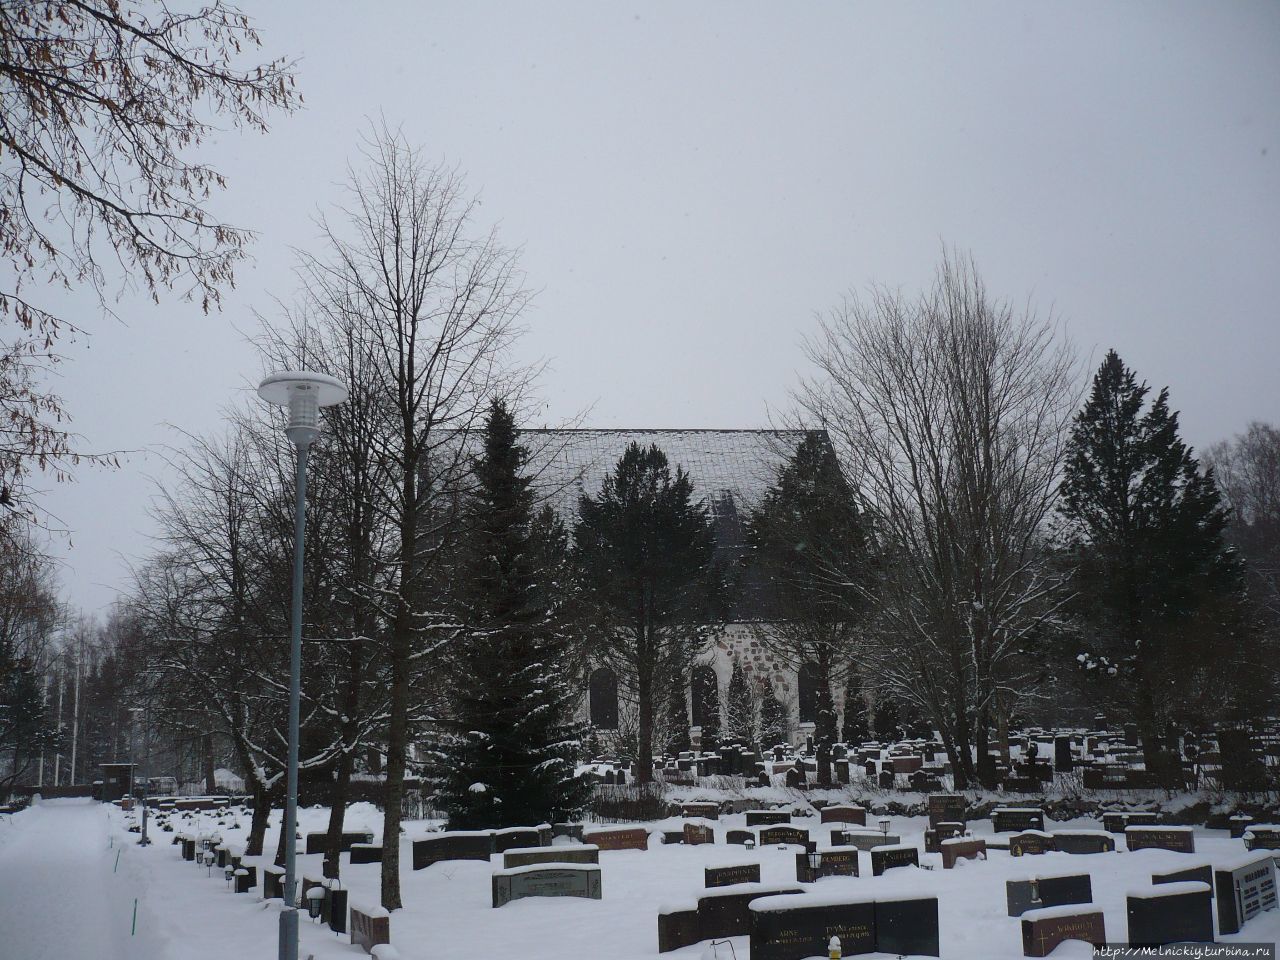 Кирха Святого Петра Сиунтио, Финляндия